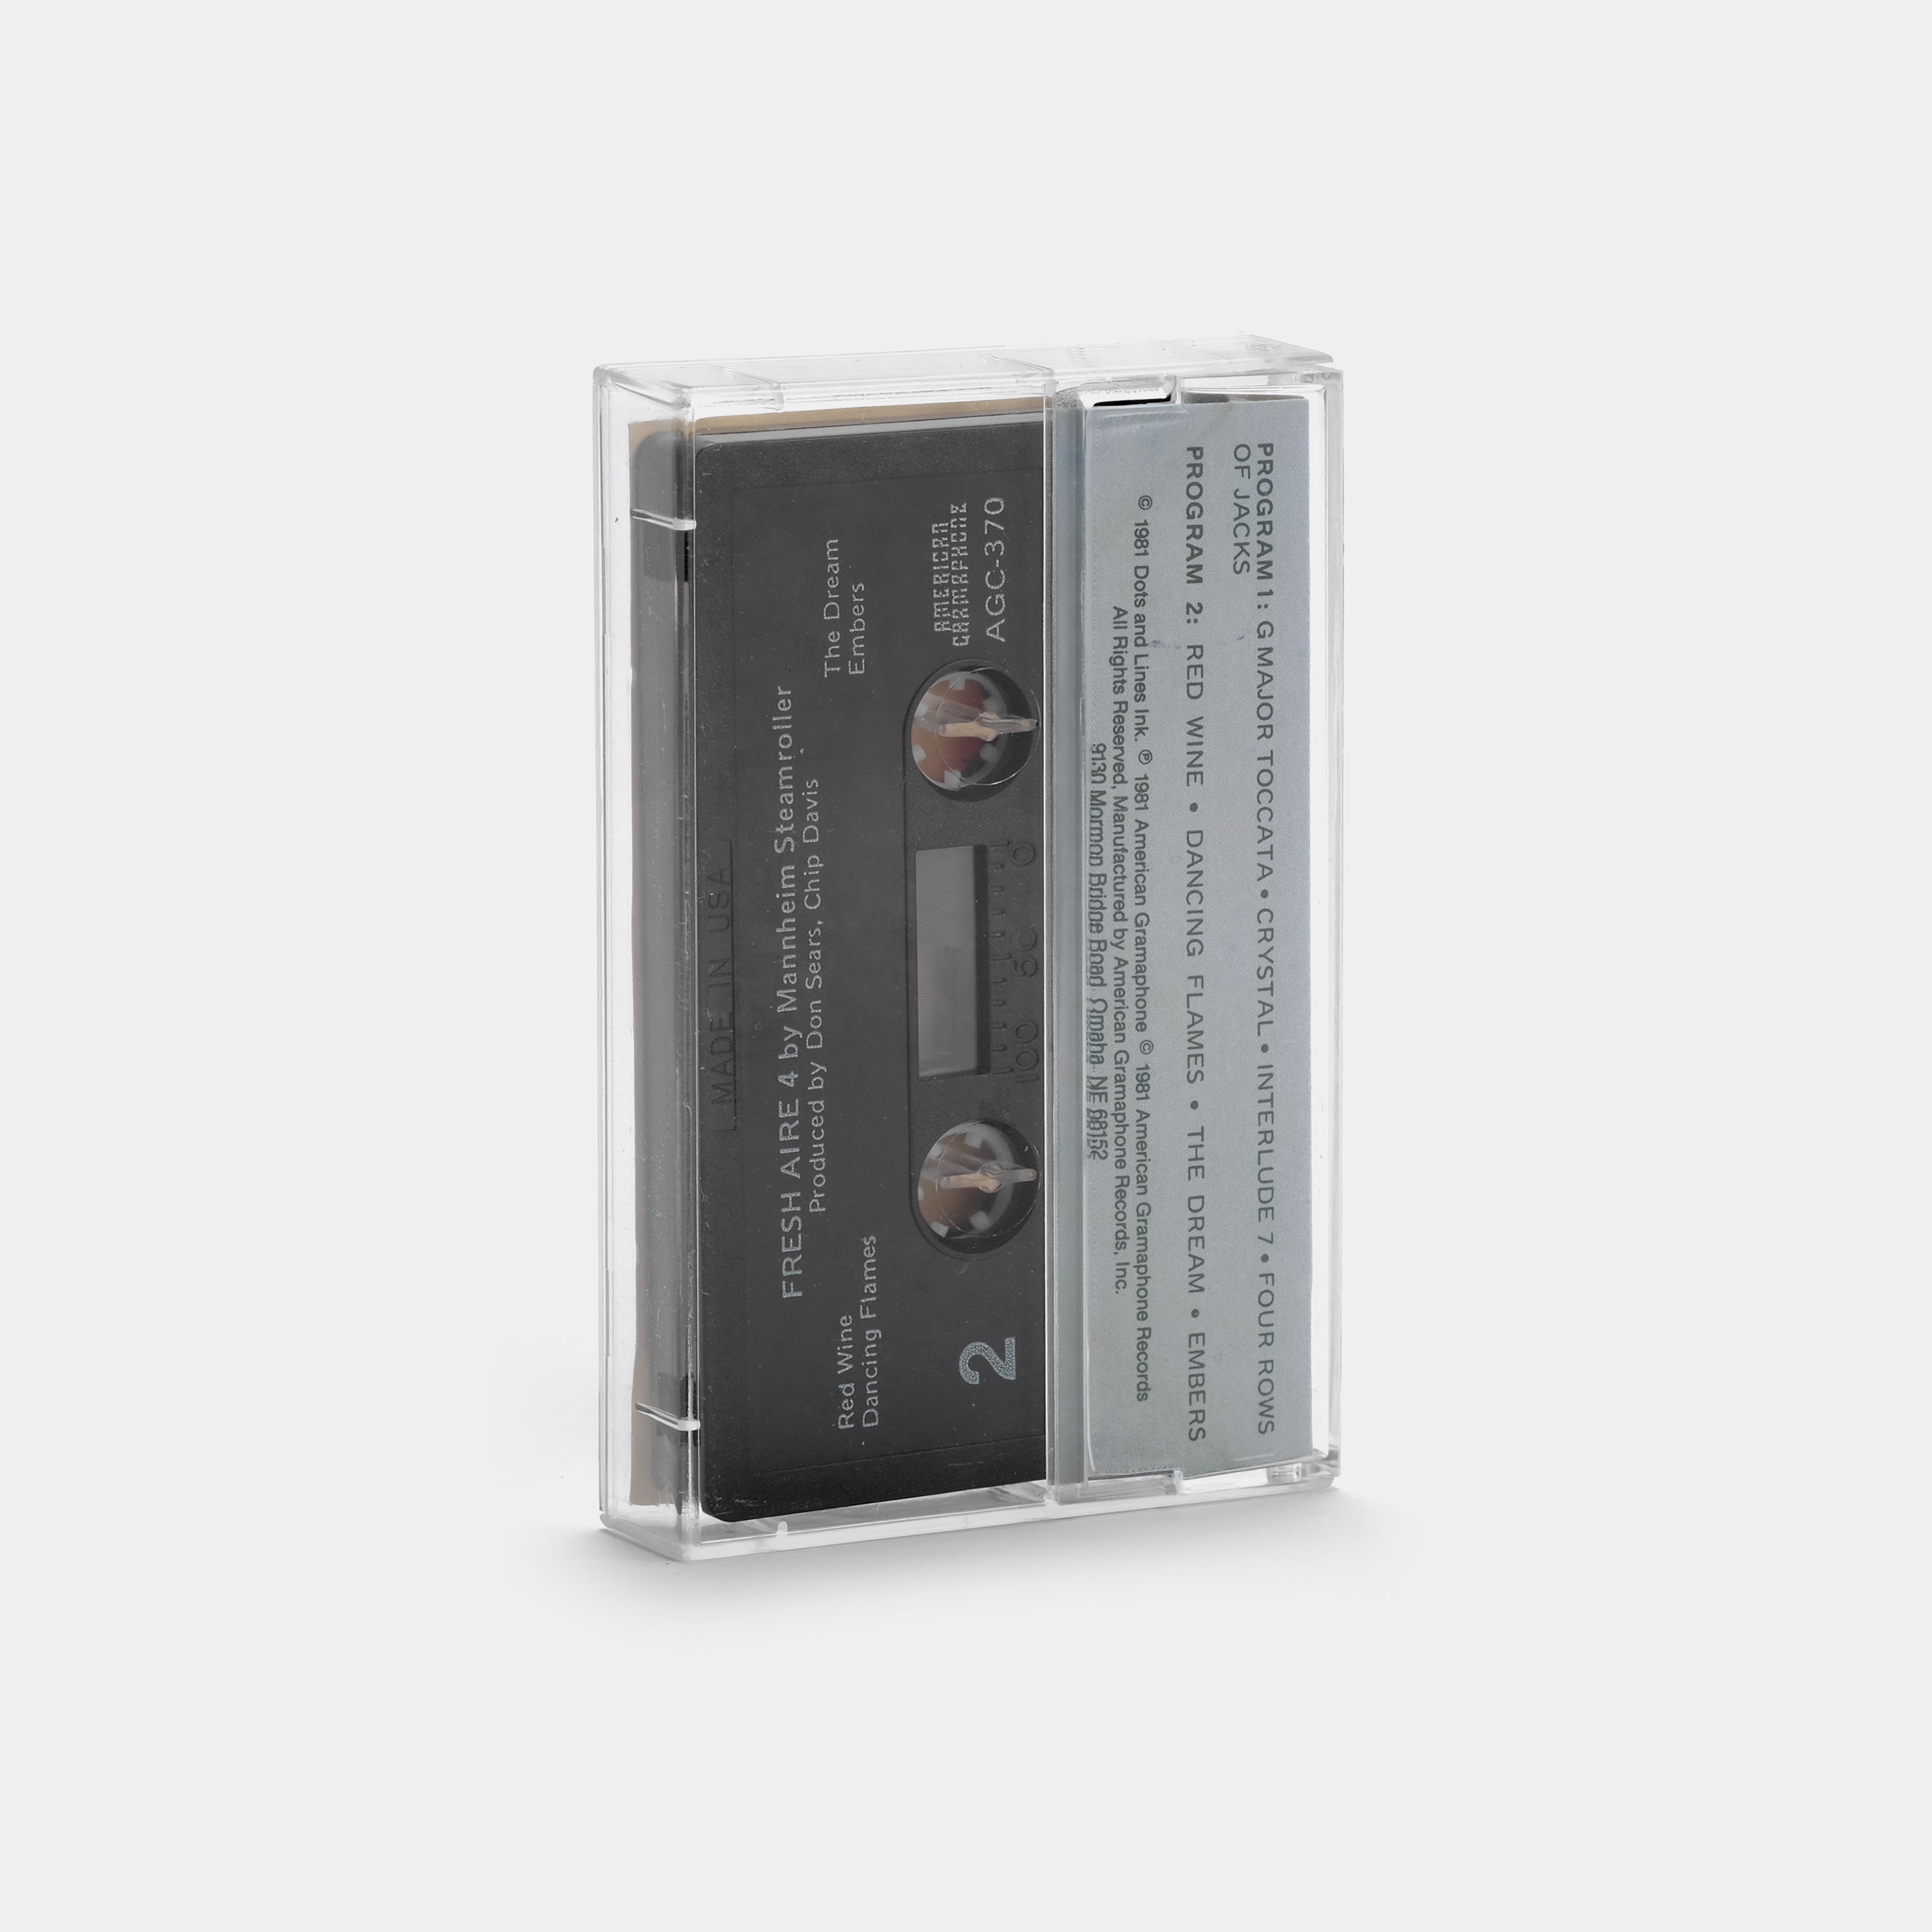 Mannheim Steamroller  - Fresh Aire 4 Cassette Tape